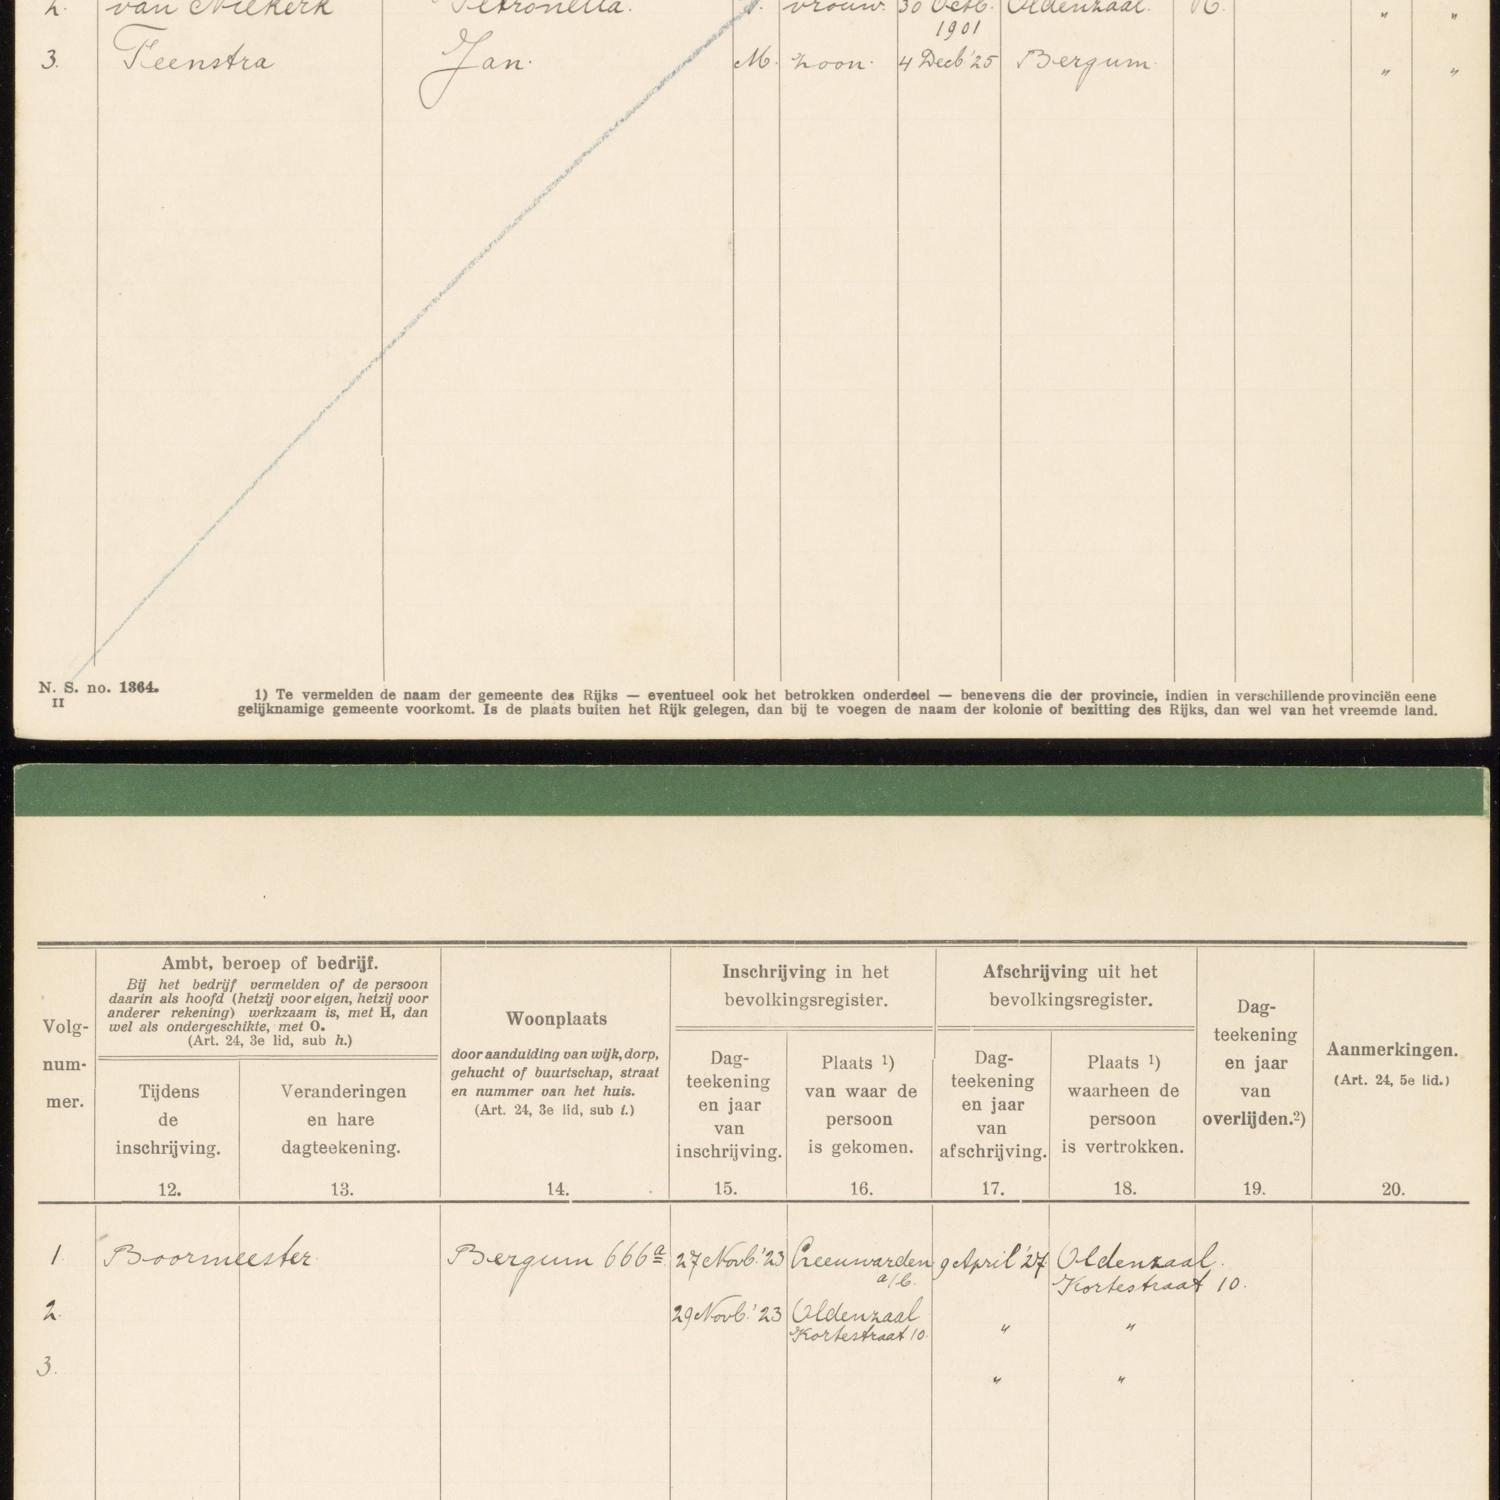 Civil registry, Tietjerksteradeel, 1914-1939, sheet 1364